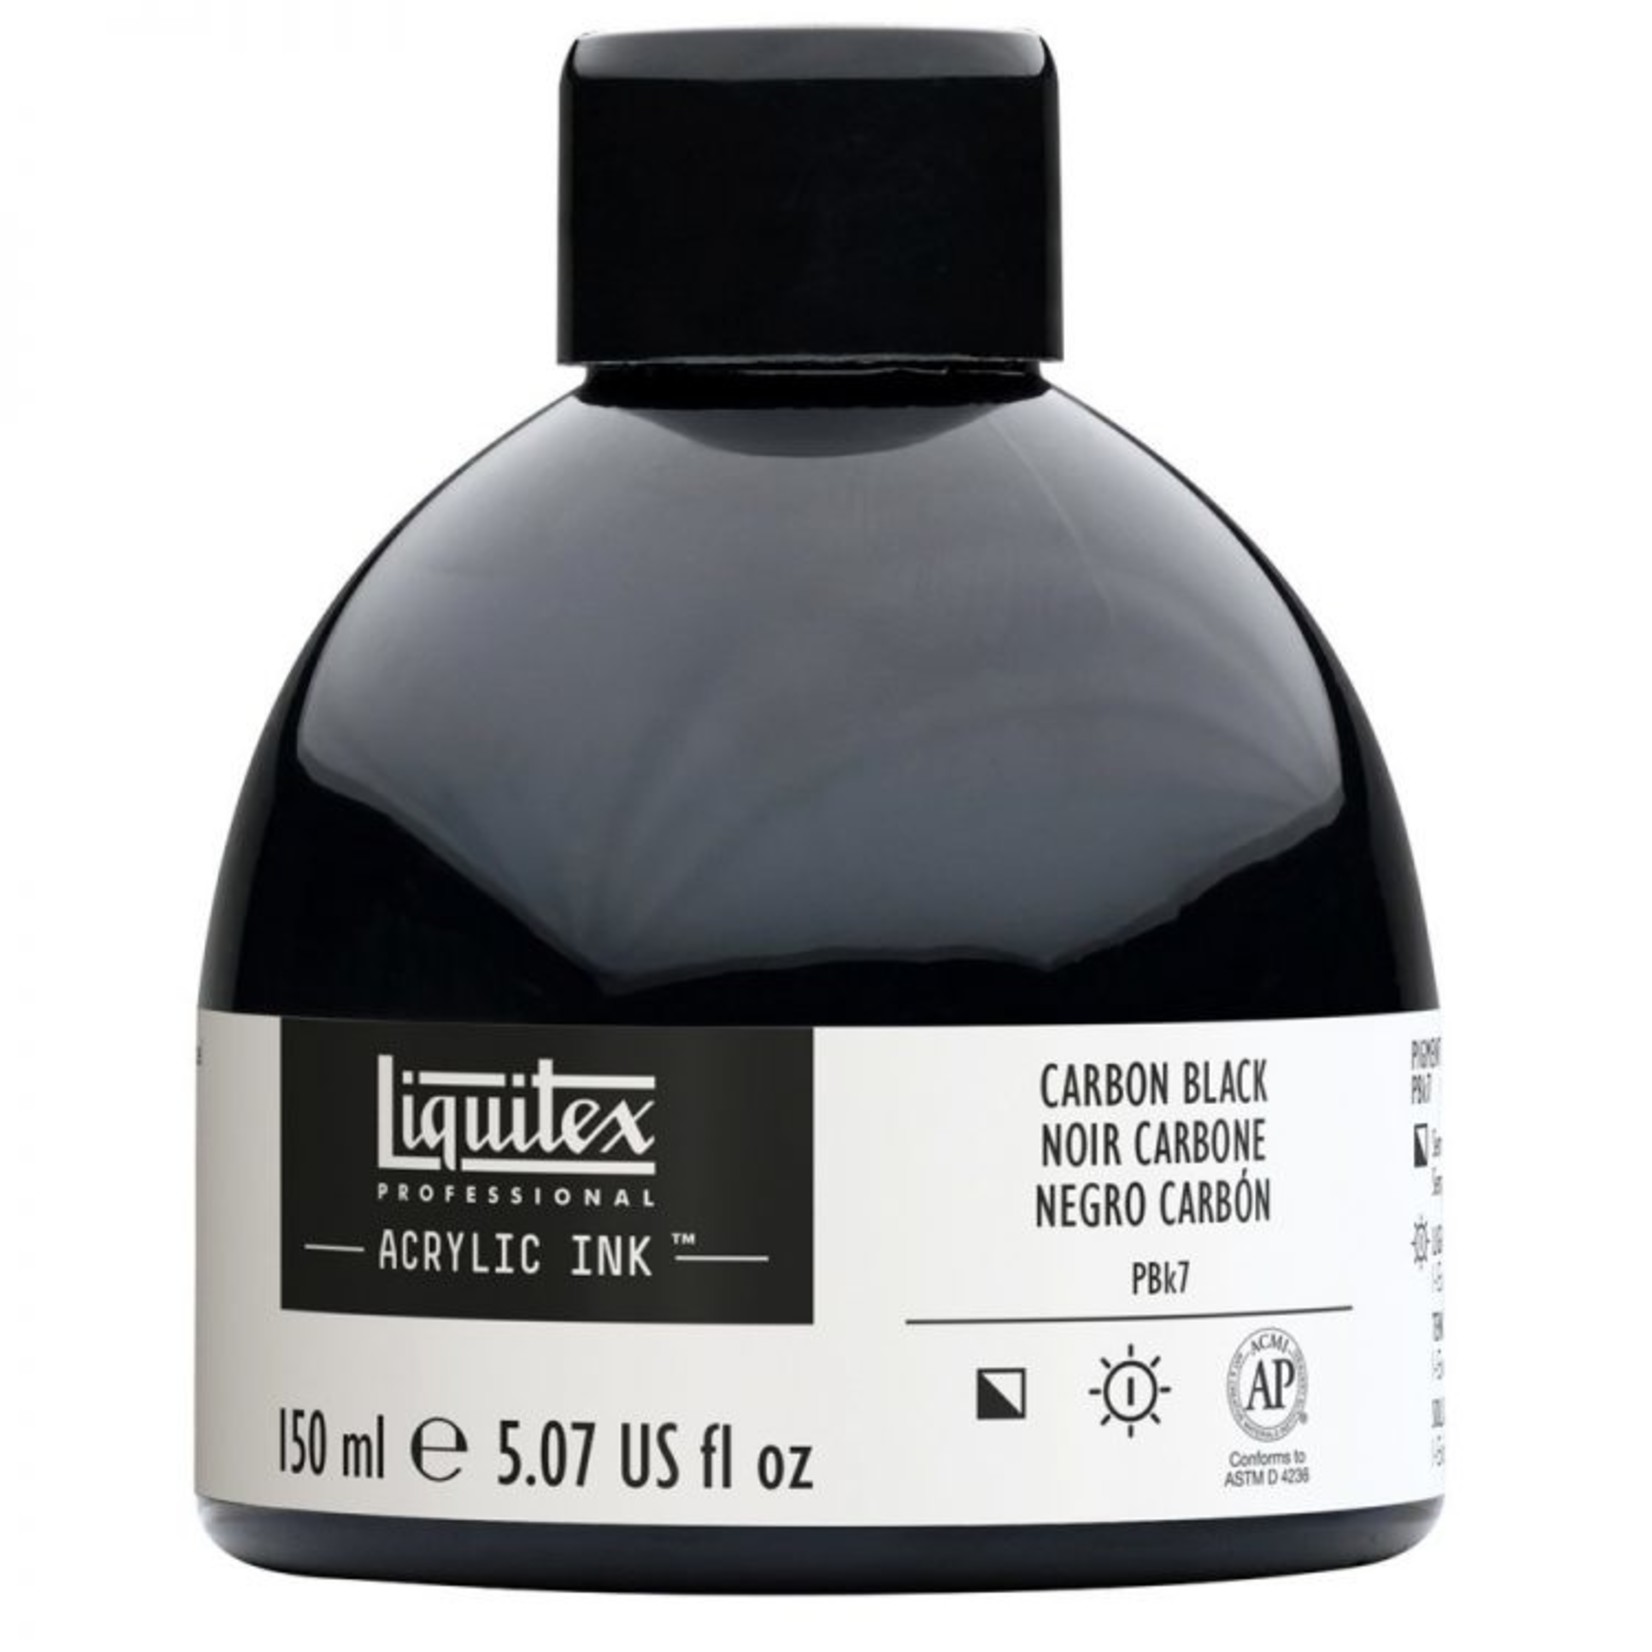 LIQUITEX LIQUITEX ACRYLIC INK 150ML CARBON BLACK SPECIAL ORDER